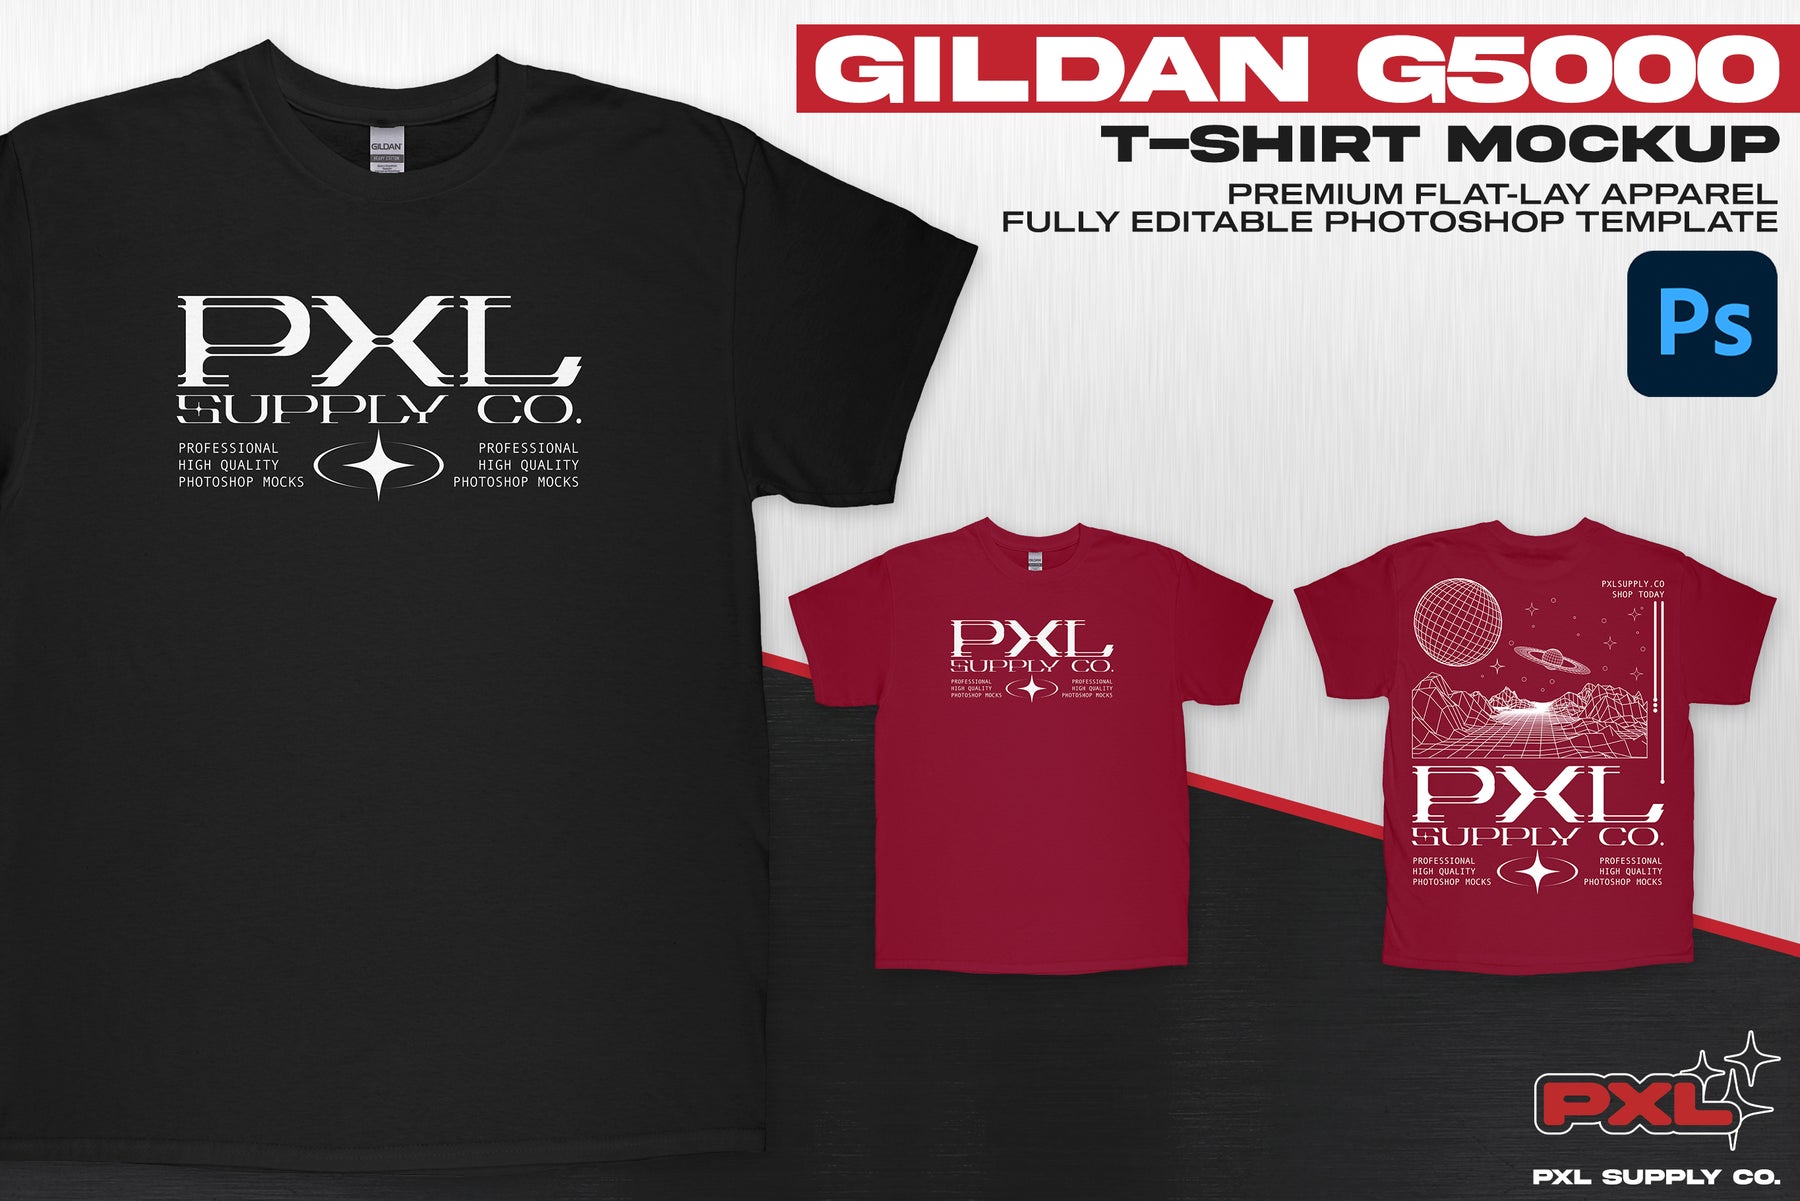 Gildan 5000 (T-Shirt) PSD Mockup